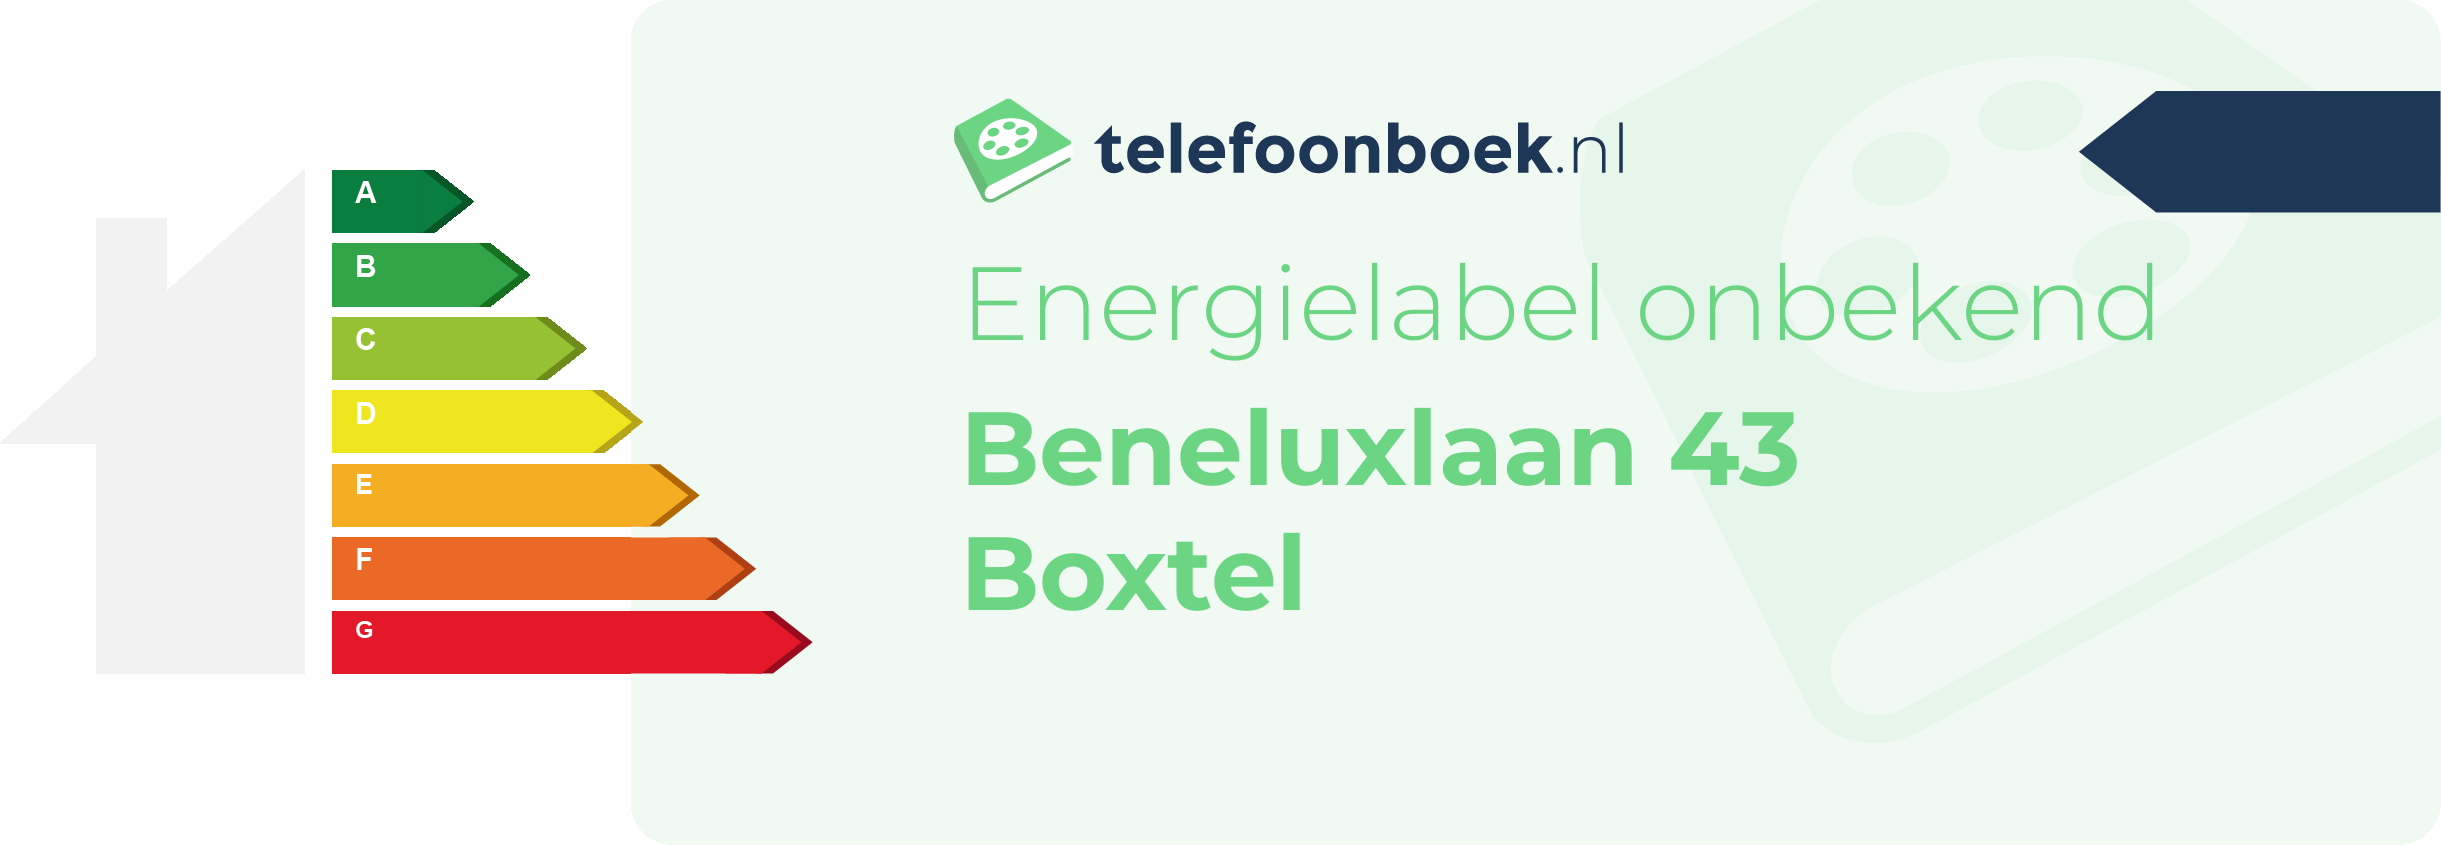 Energielabel Beneluxlaan 43 Boxtel